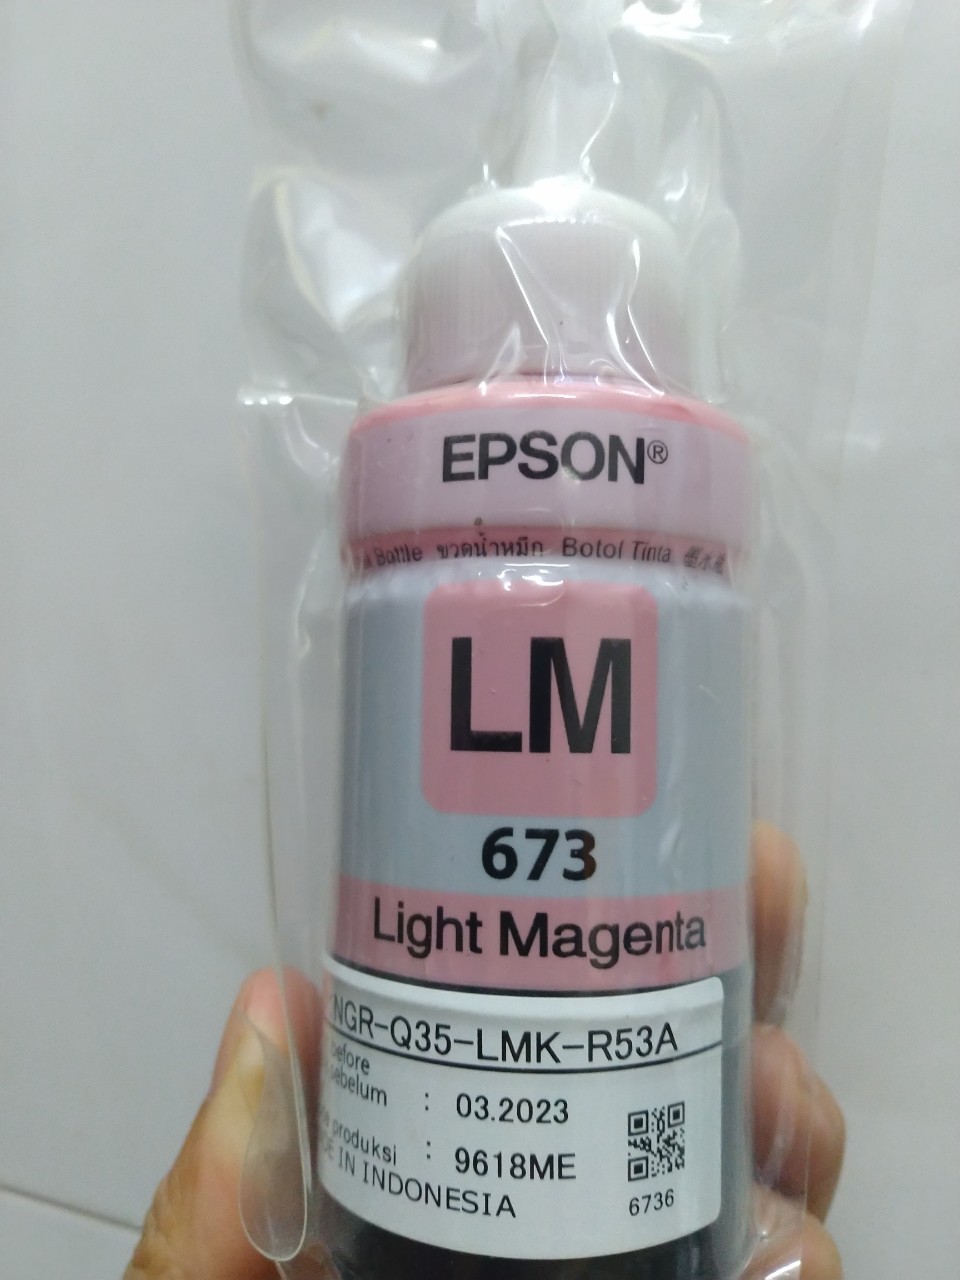 Mực Epson 673 màu đỏ nhạt dành cho máy Epson L805 / L850 / L1800 / L810 / L800- LM